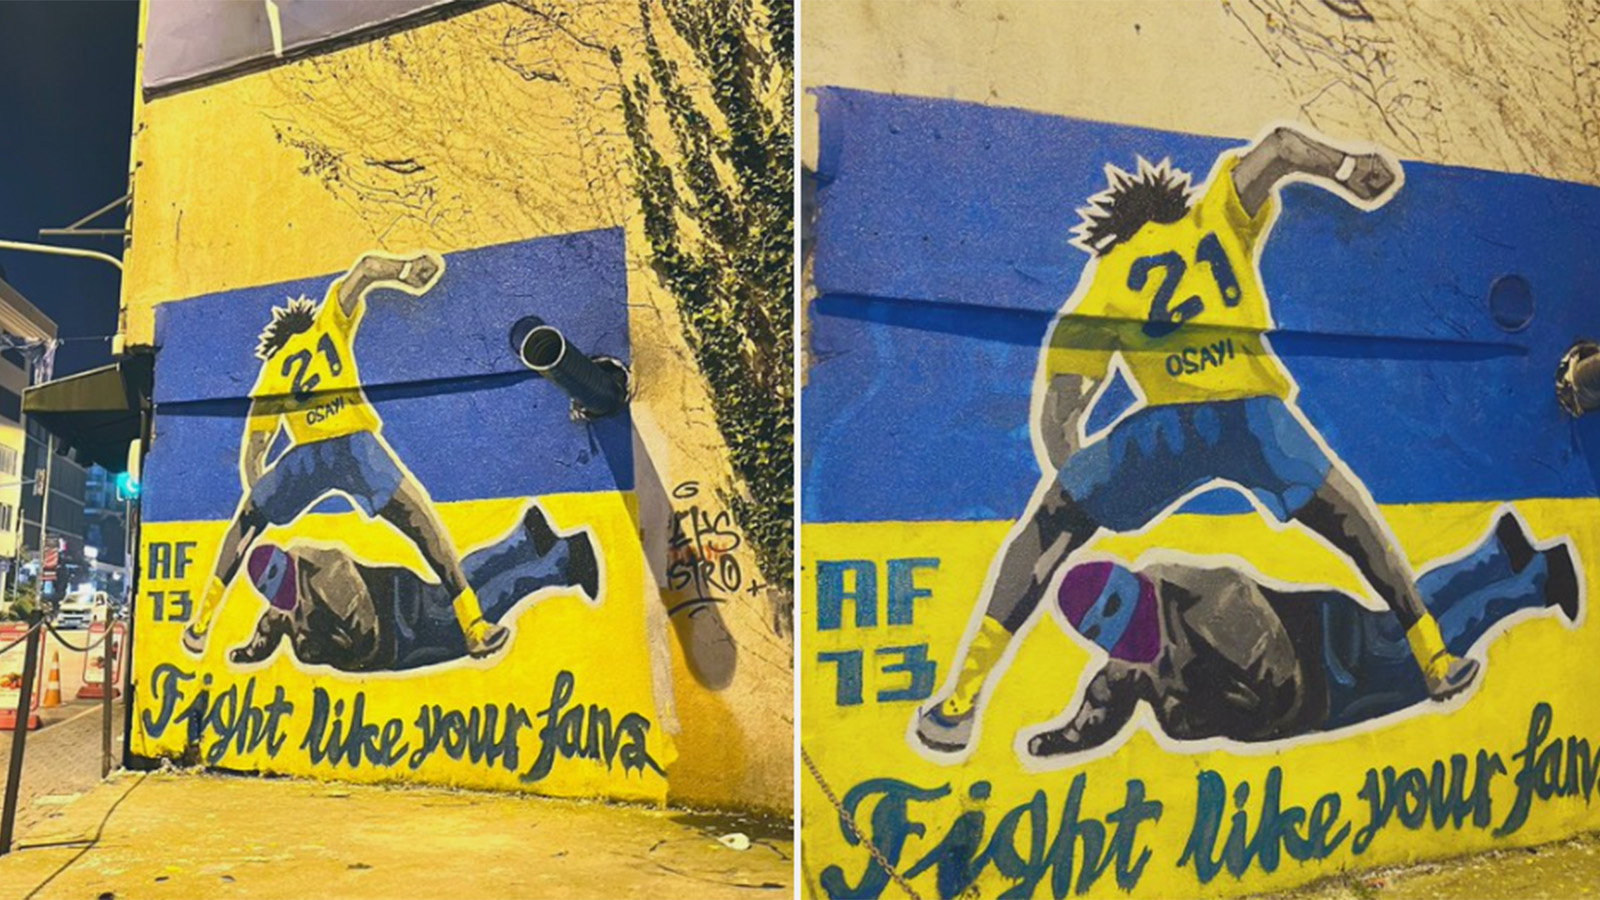 Kadıköy Belediyesi’nden Osayi Samuel grafitisinin silinmesine ilişkin açıklama yapıldı